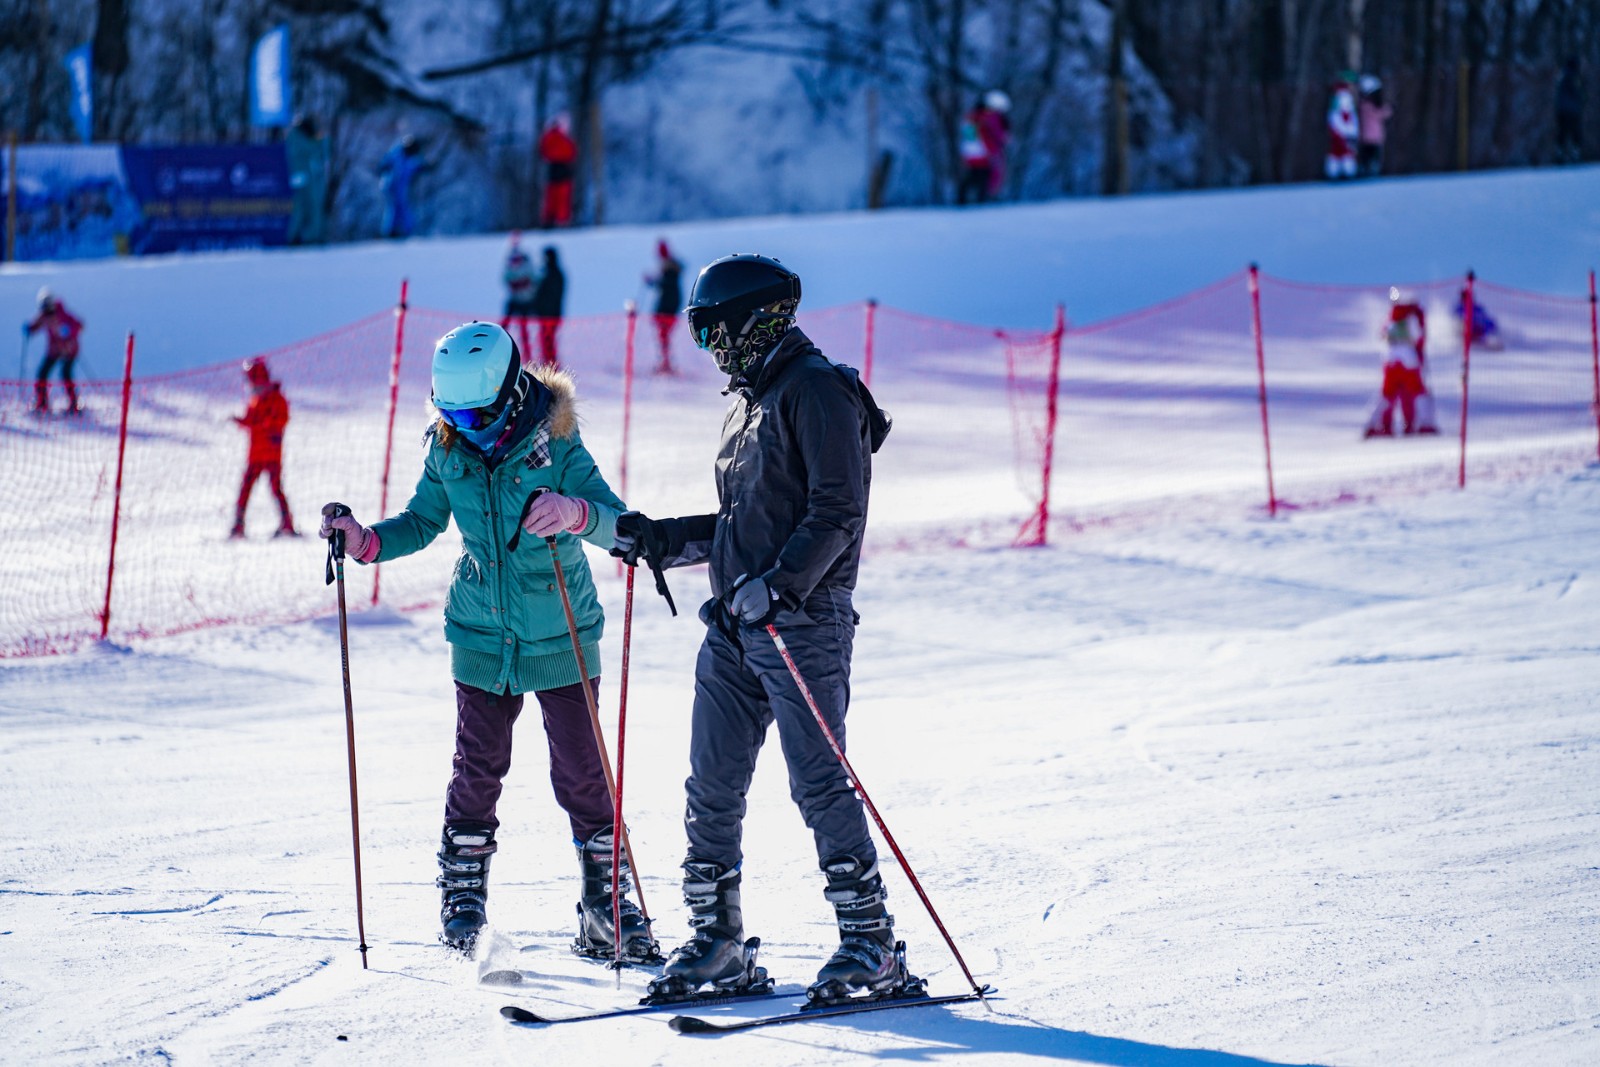 延庆“奥林匹克园区”拟打造国际滑雪度假旅游胜地 预计明年“五一”开园